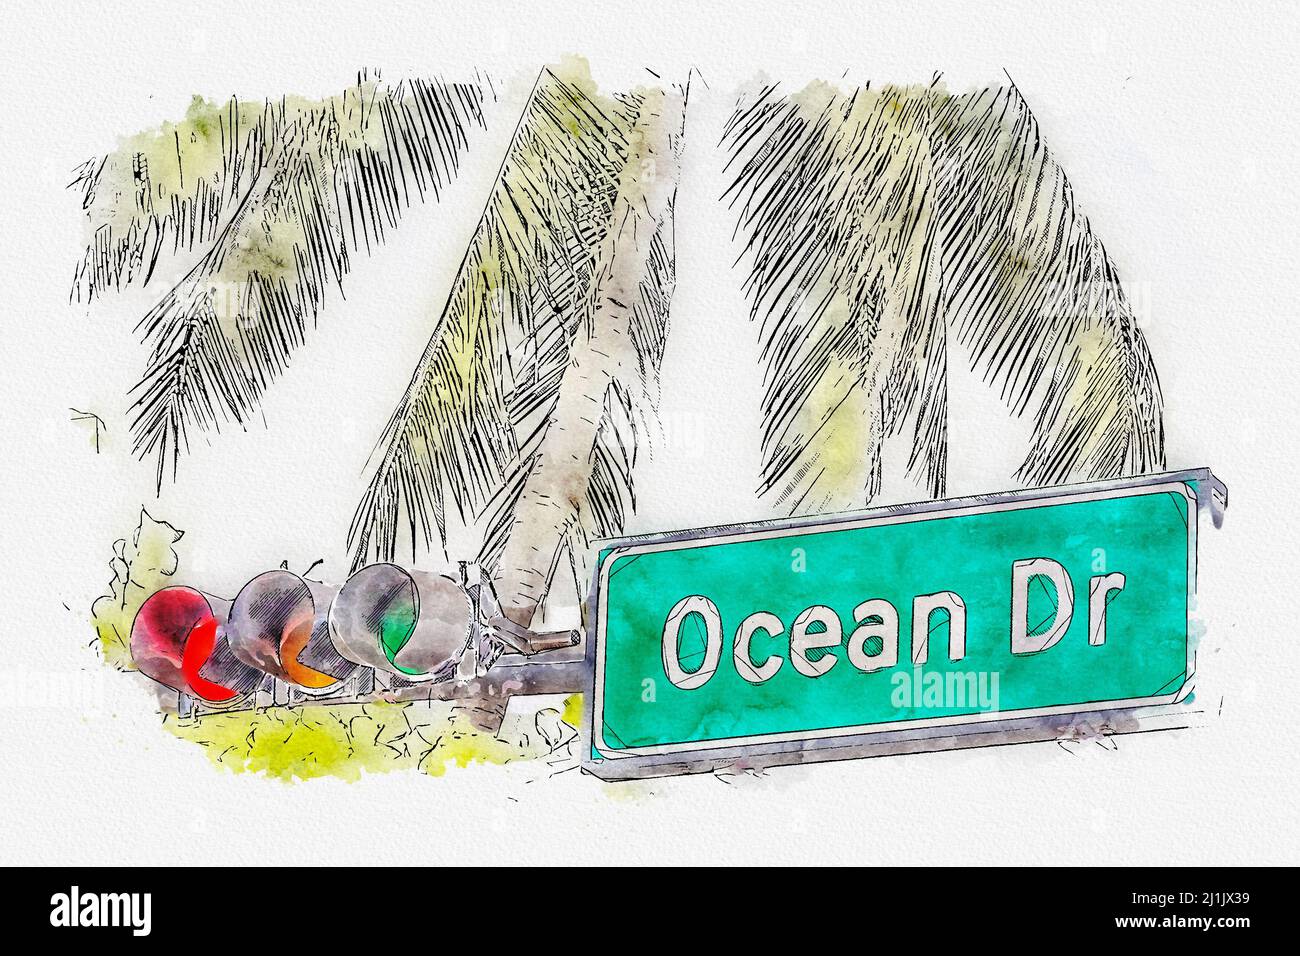 Illustration aquarelle du panneau de rue Ocean Drive dans le quartier Art Deco du sud de Miami aux États-Unis Banque D'Images